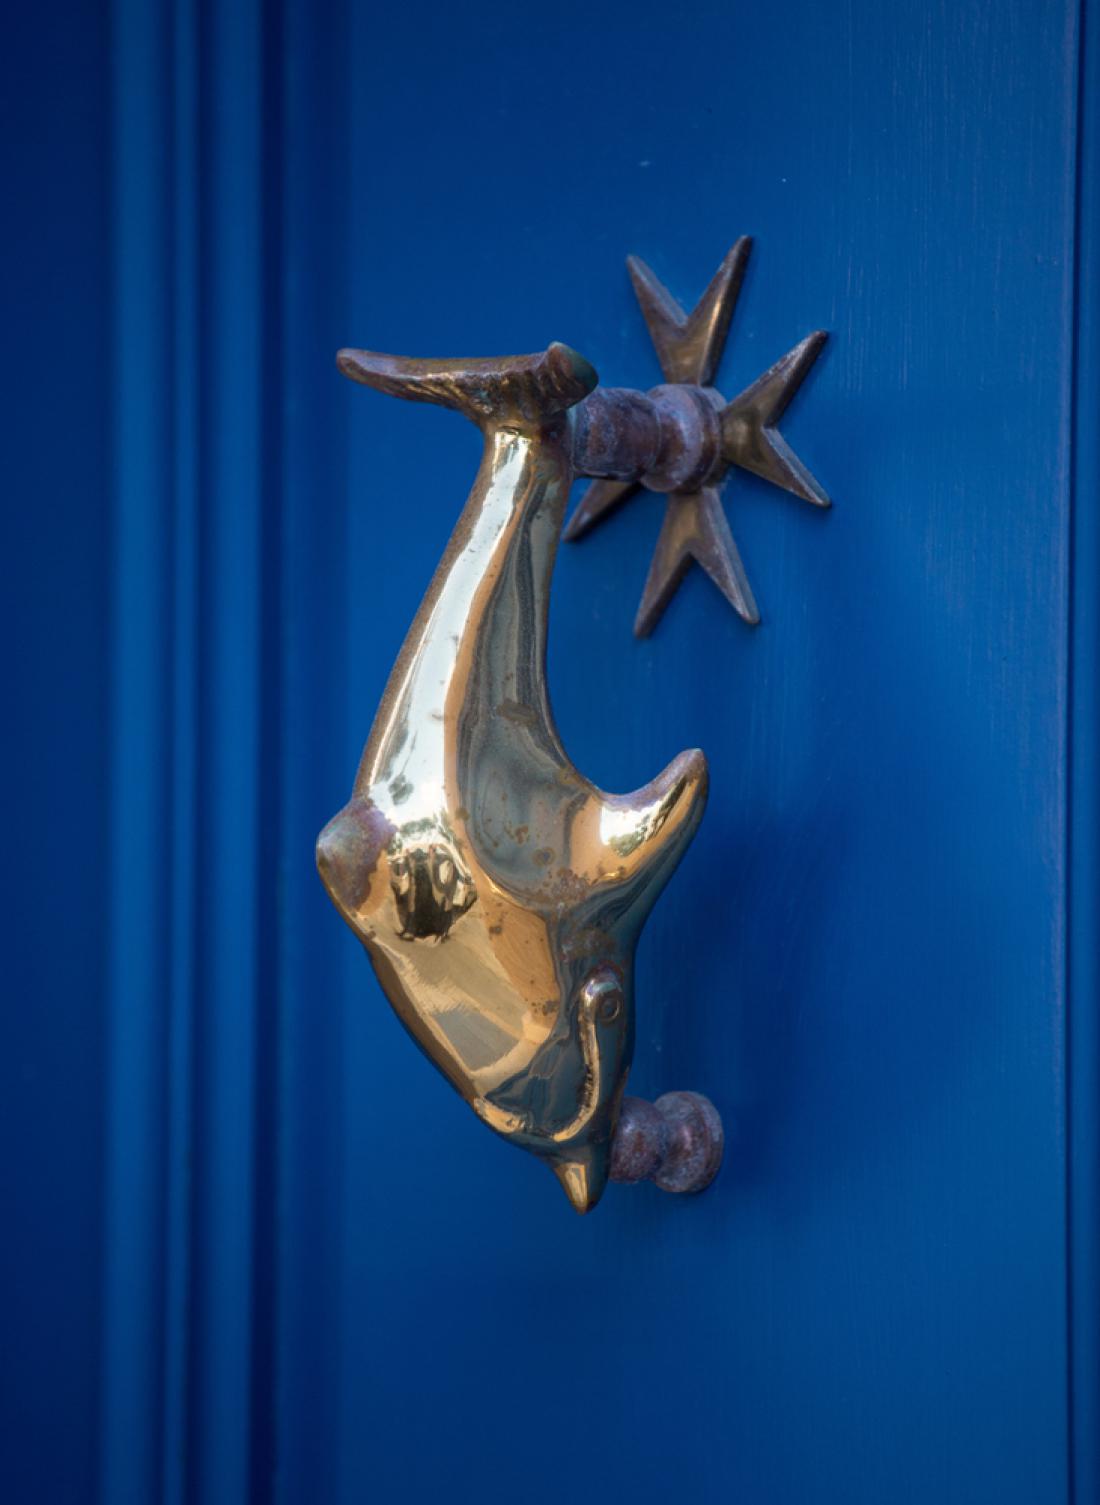 Maltežani so z delfini močno povezani, vrata malteških domov pogosto krasijo tolkala v obliki teh morskih živali. Foto: Natalia Golovina/Shutterstock